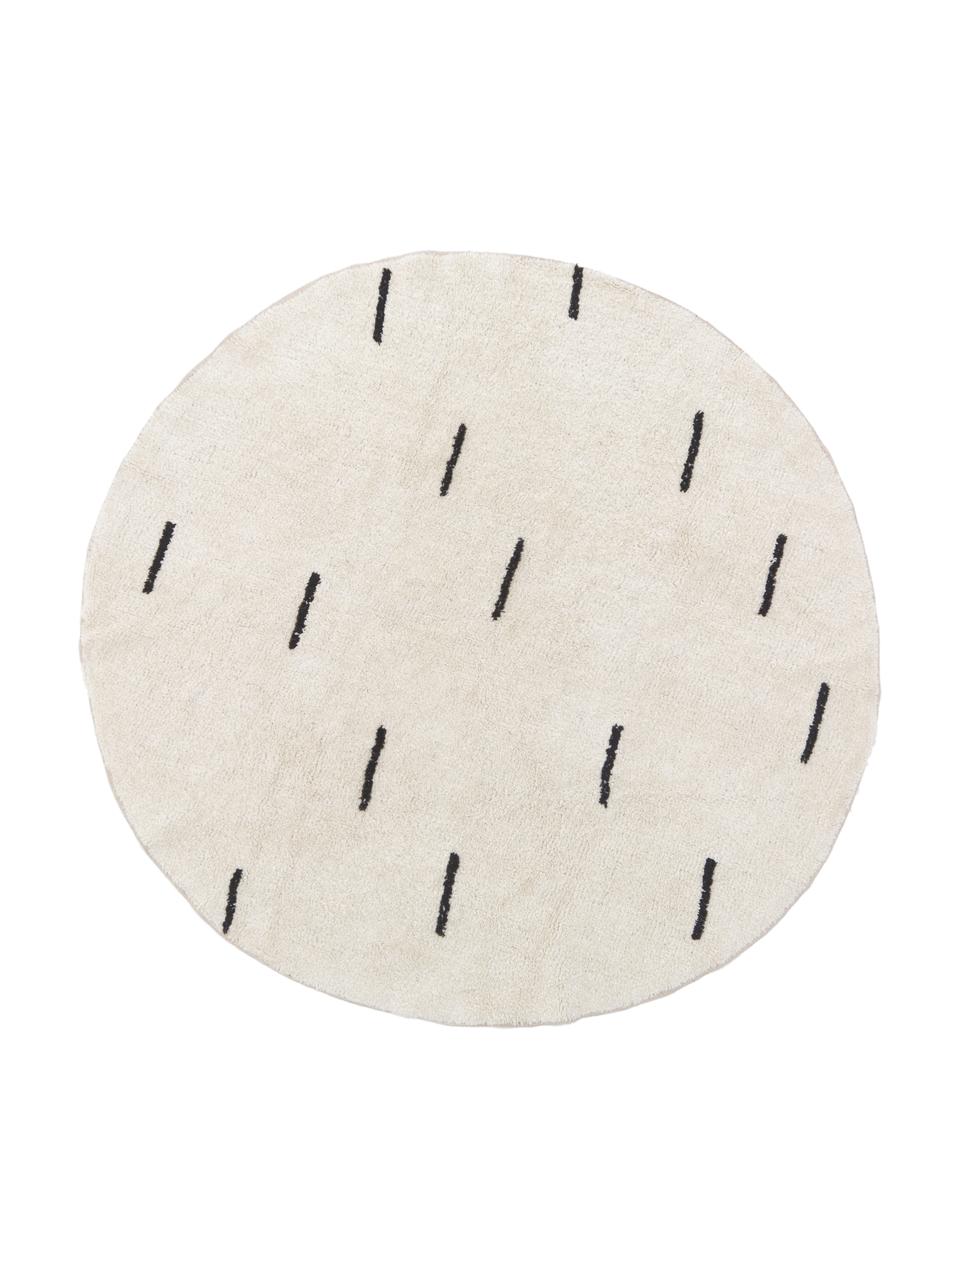 Kulatý bavlněný koberec Suizo, 100 % bavlna, Režná, černá, Ø 150 cm (velikost M)